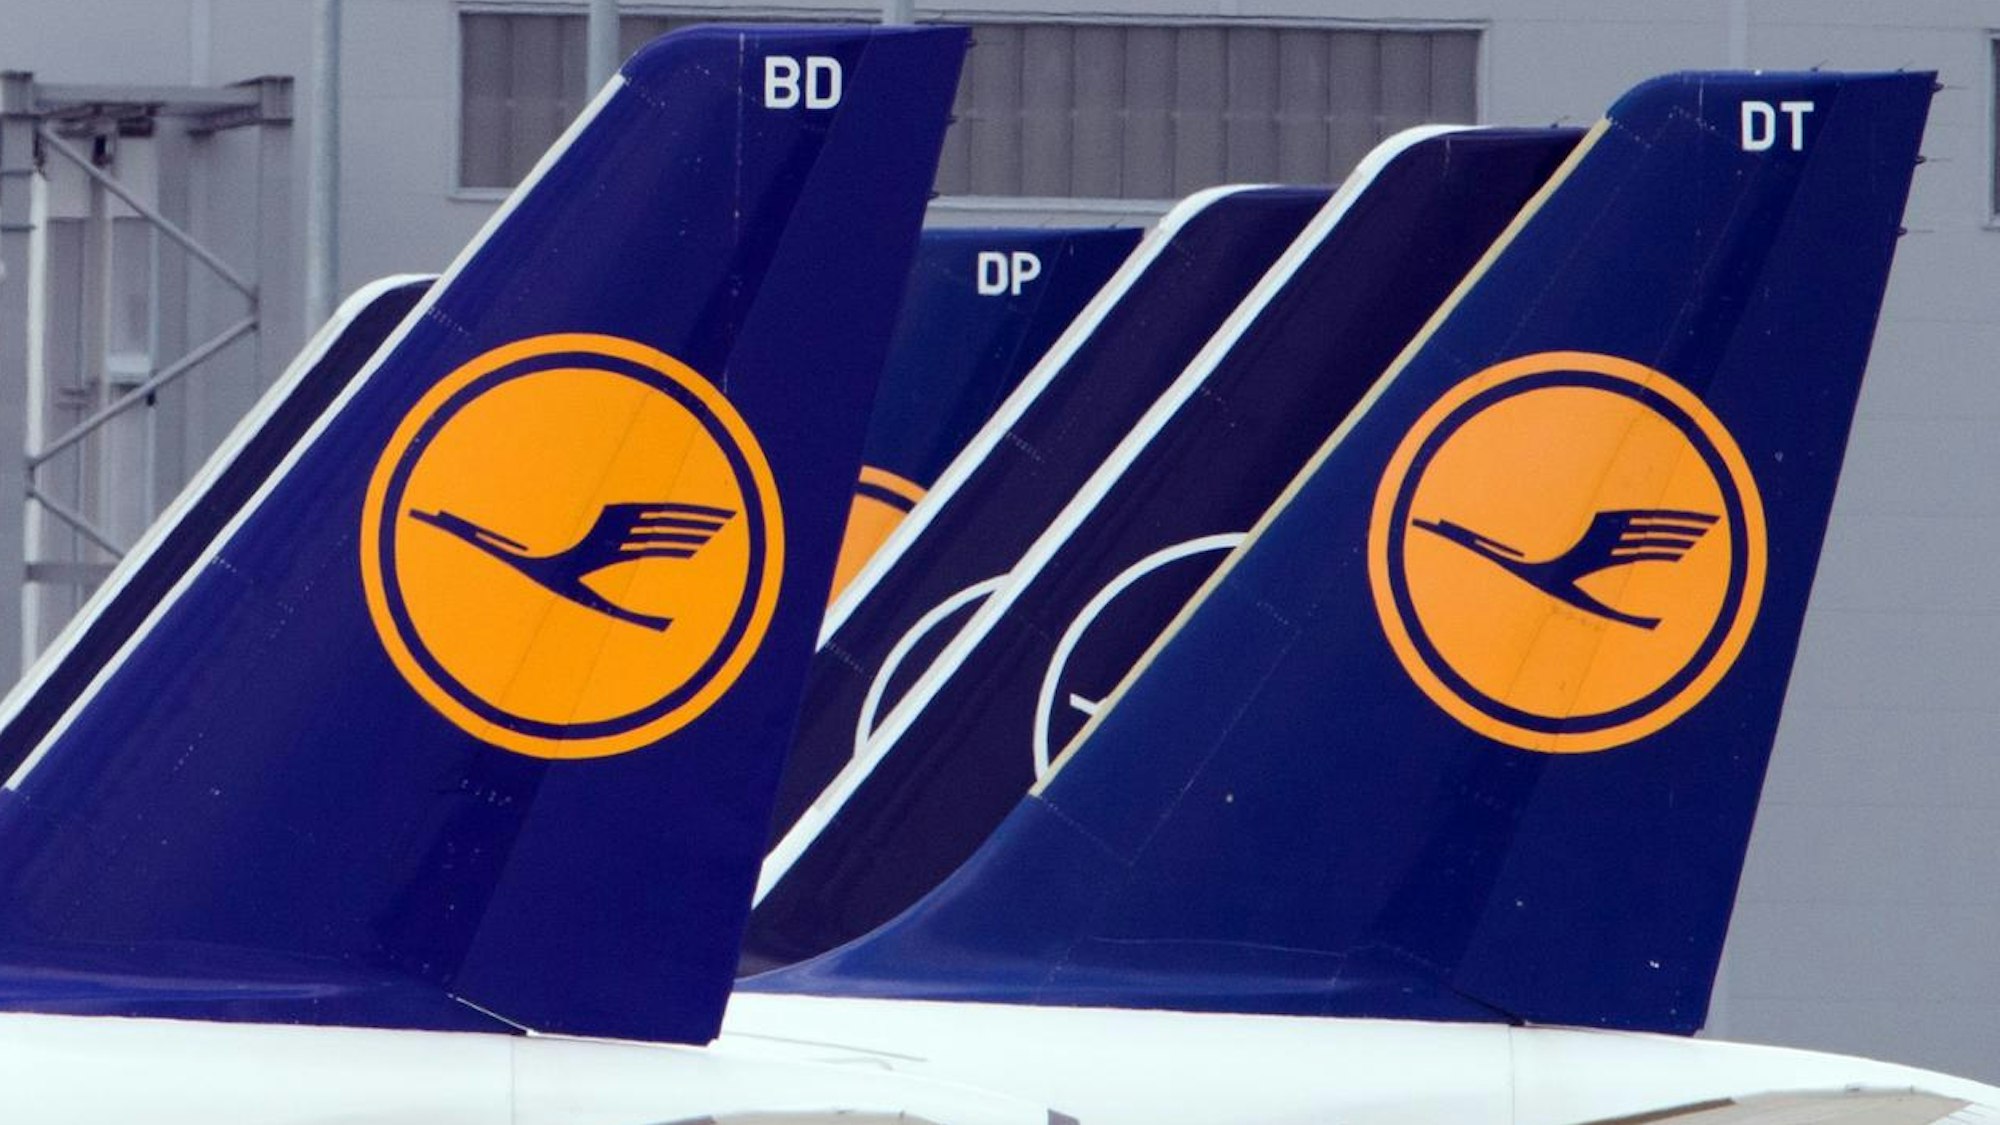 Flugzeuge der Lufthansa stehen auf einem Flughafen.